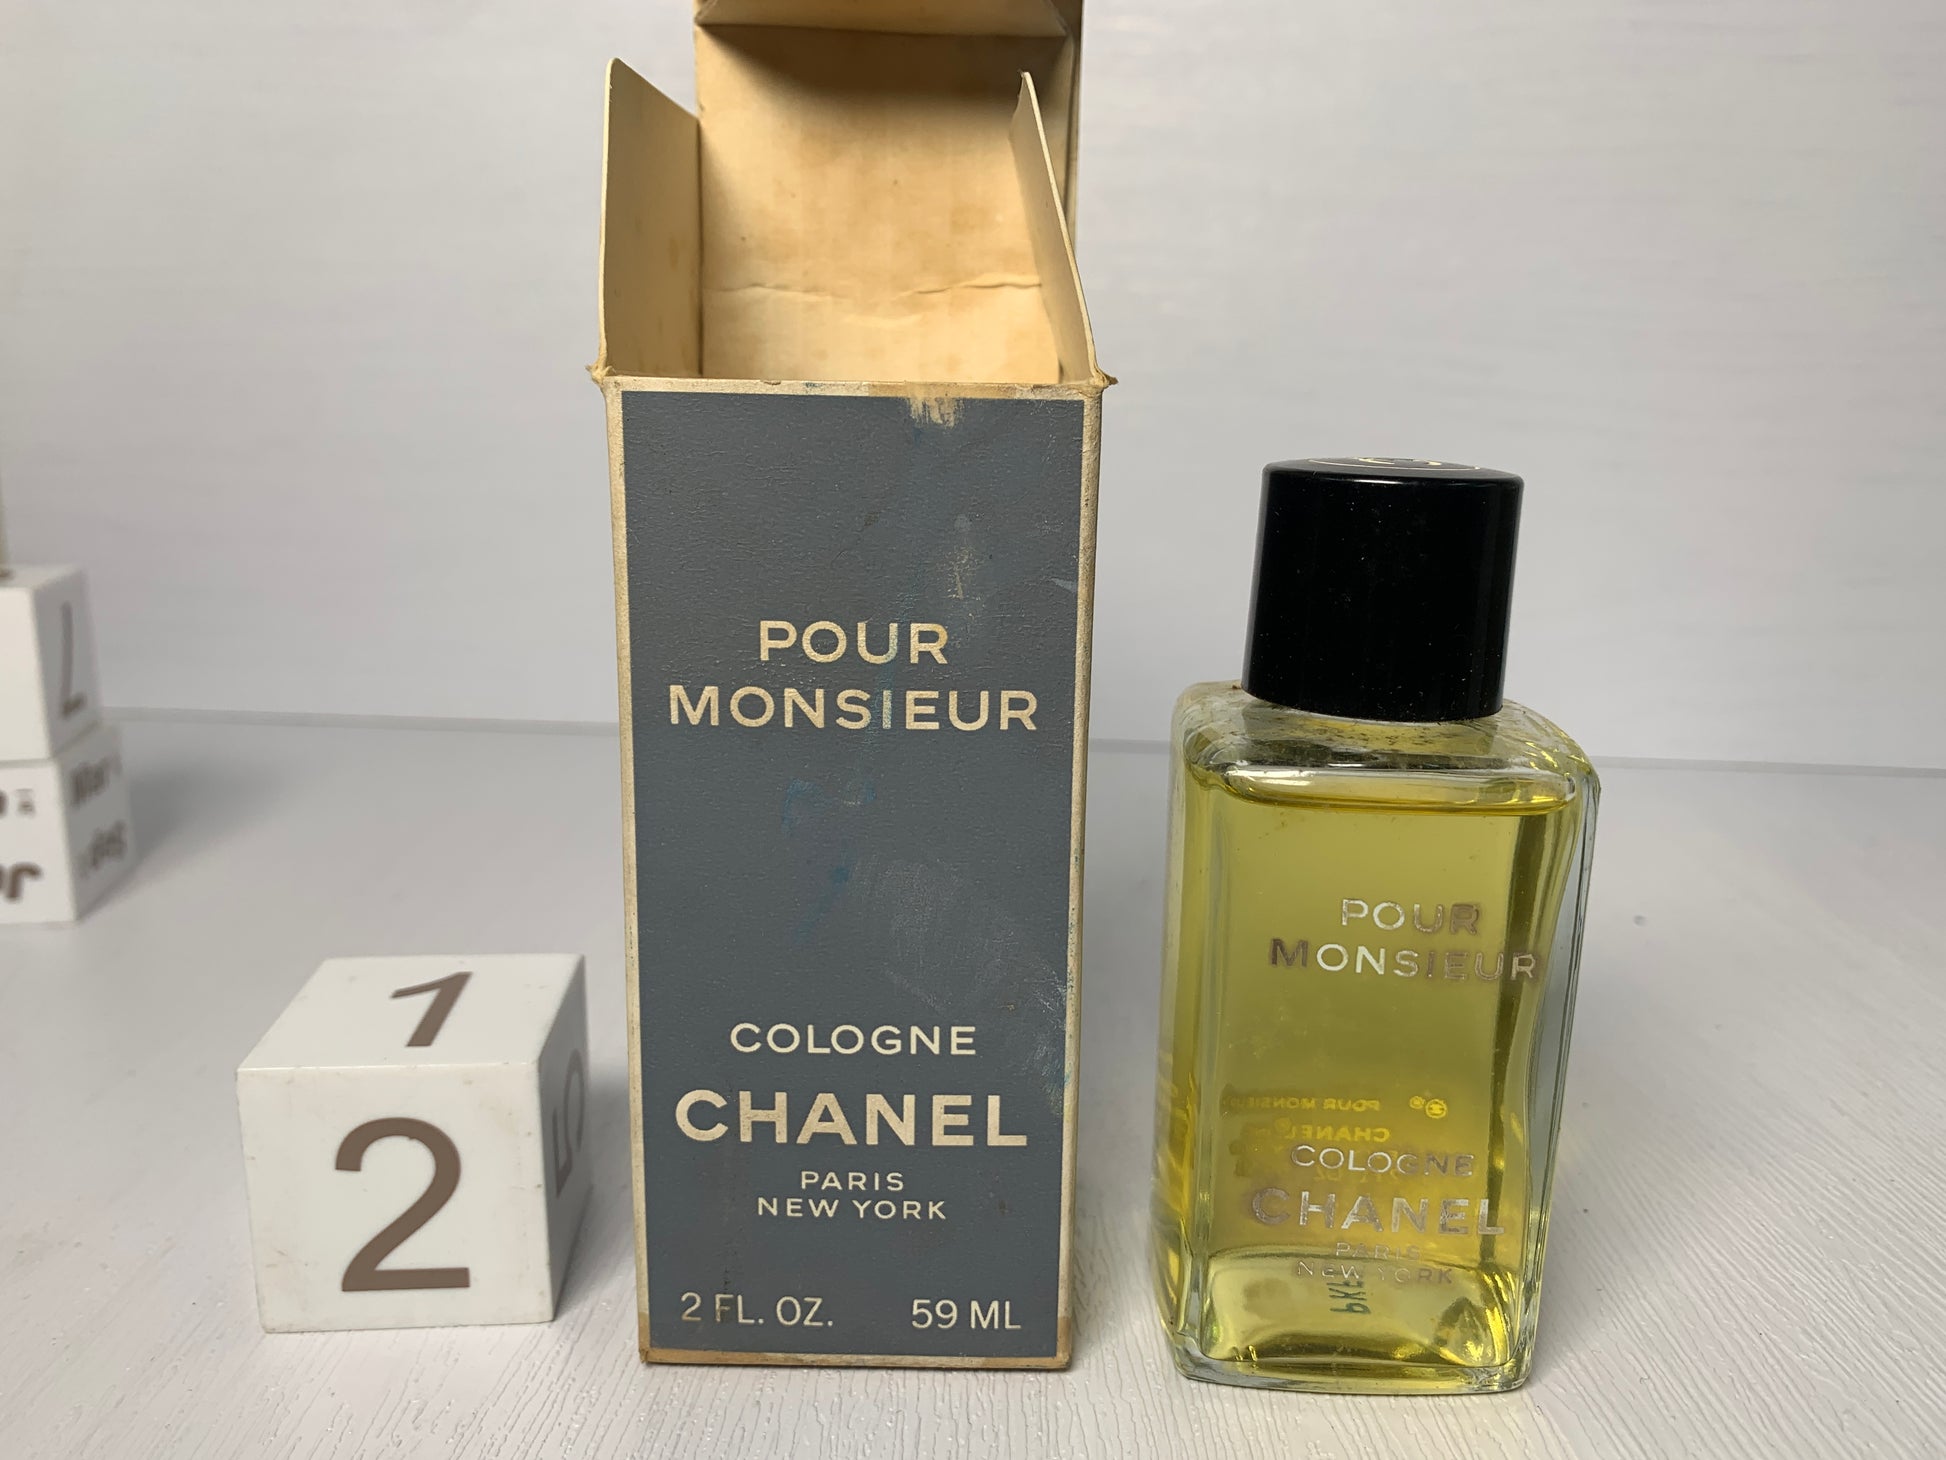 Vintage Chanel Pour Monsieur EDT 100ml men's perfume